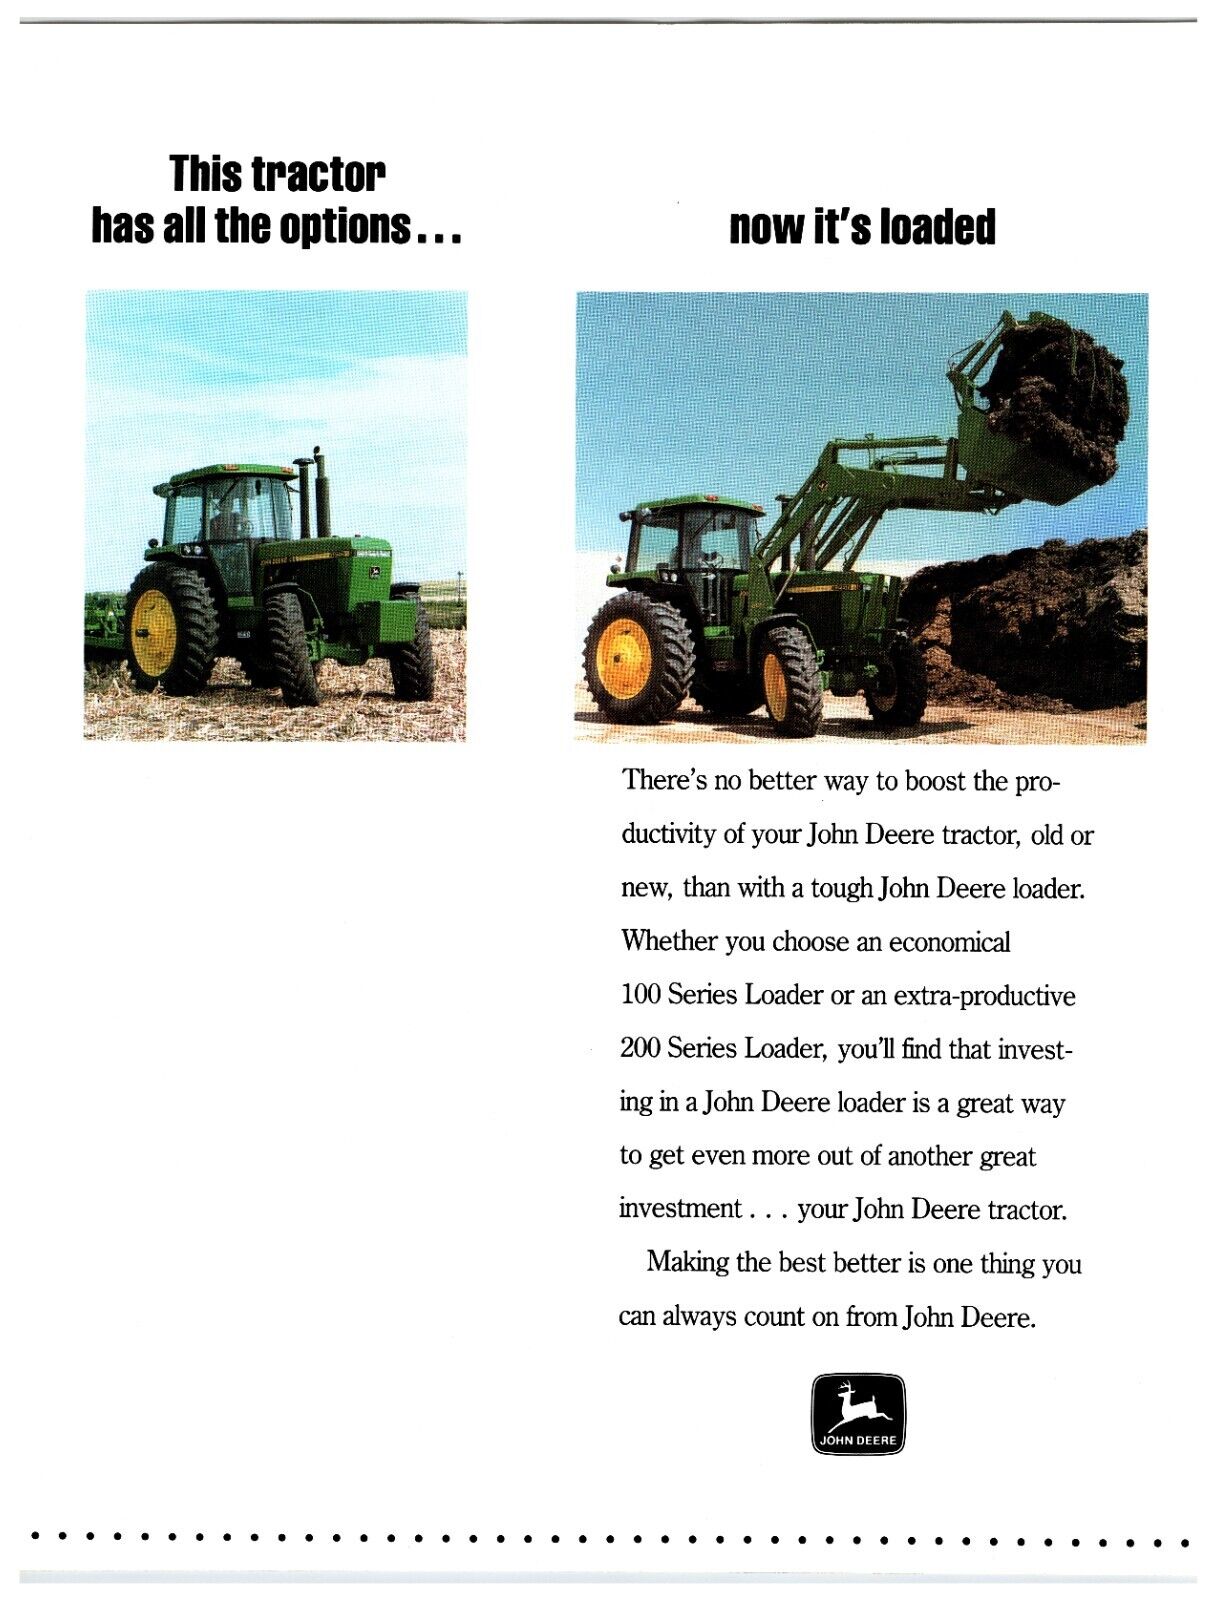 1980s John Deere Tractor Loaders - Original Print Advertisement (11in x 9in)